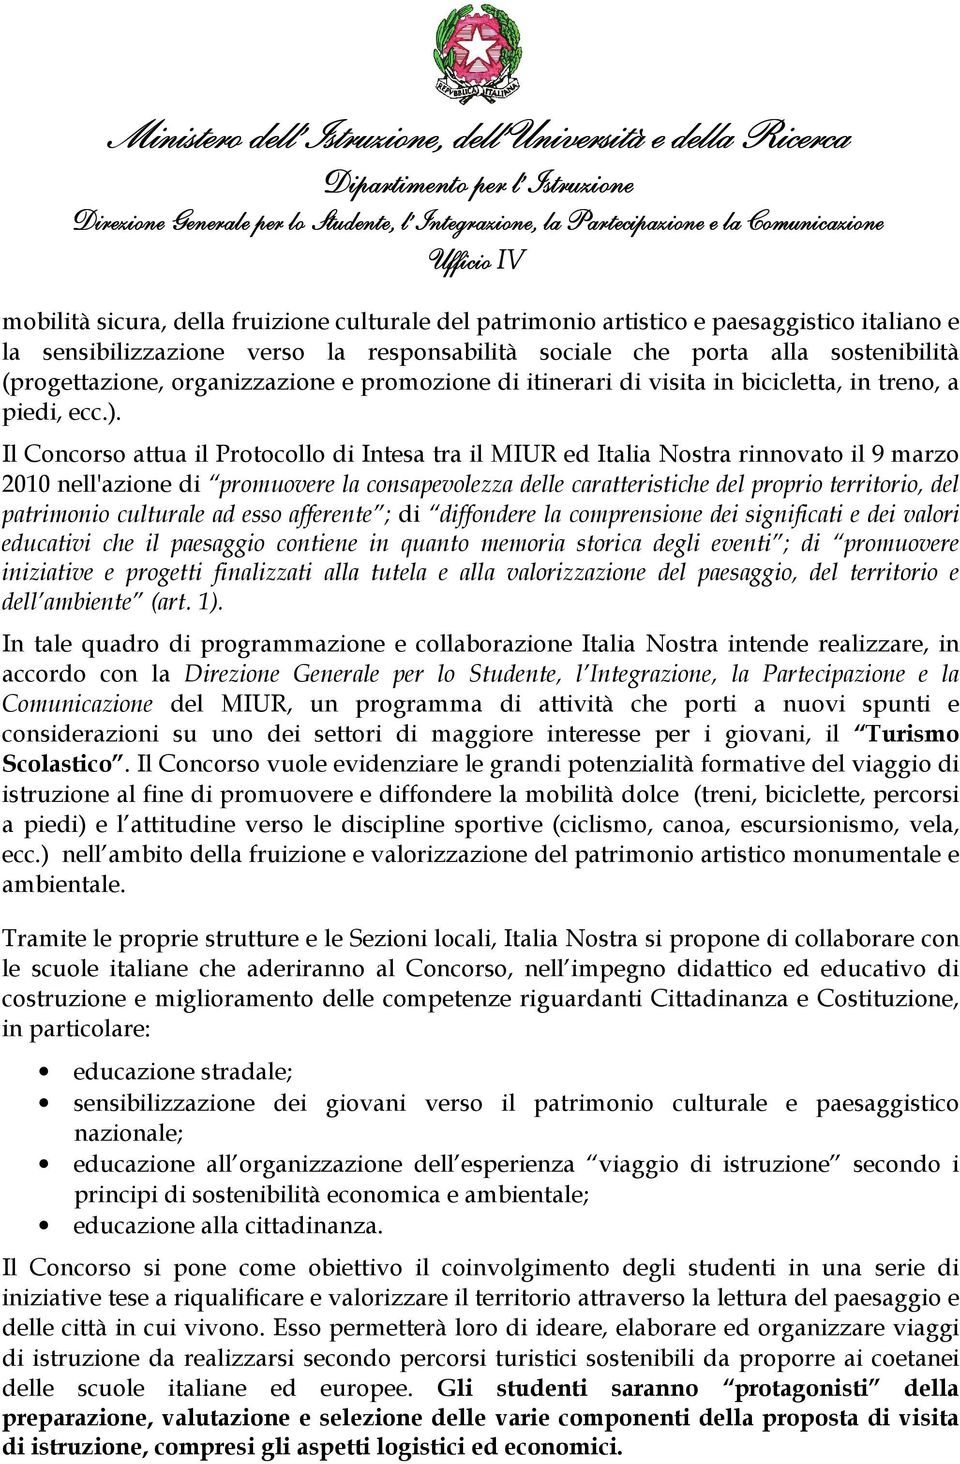 Il Concorso attua il Protocollo di Intesa tra il MIUR ed Italia Nostra rinnovato il 9 marzo 2010 nell'azione di promuovere la consapevolezza delle caratteristiche del proprio territorio, del